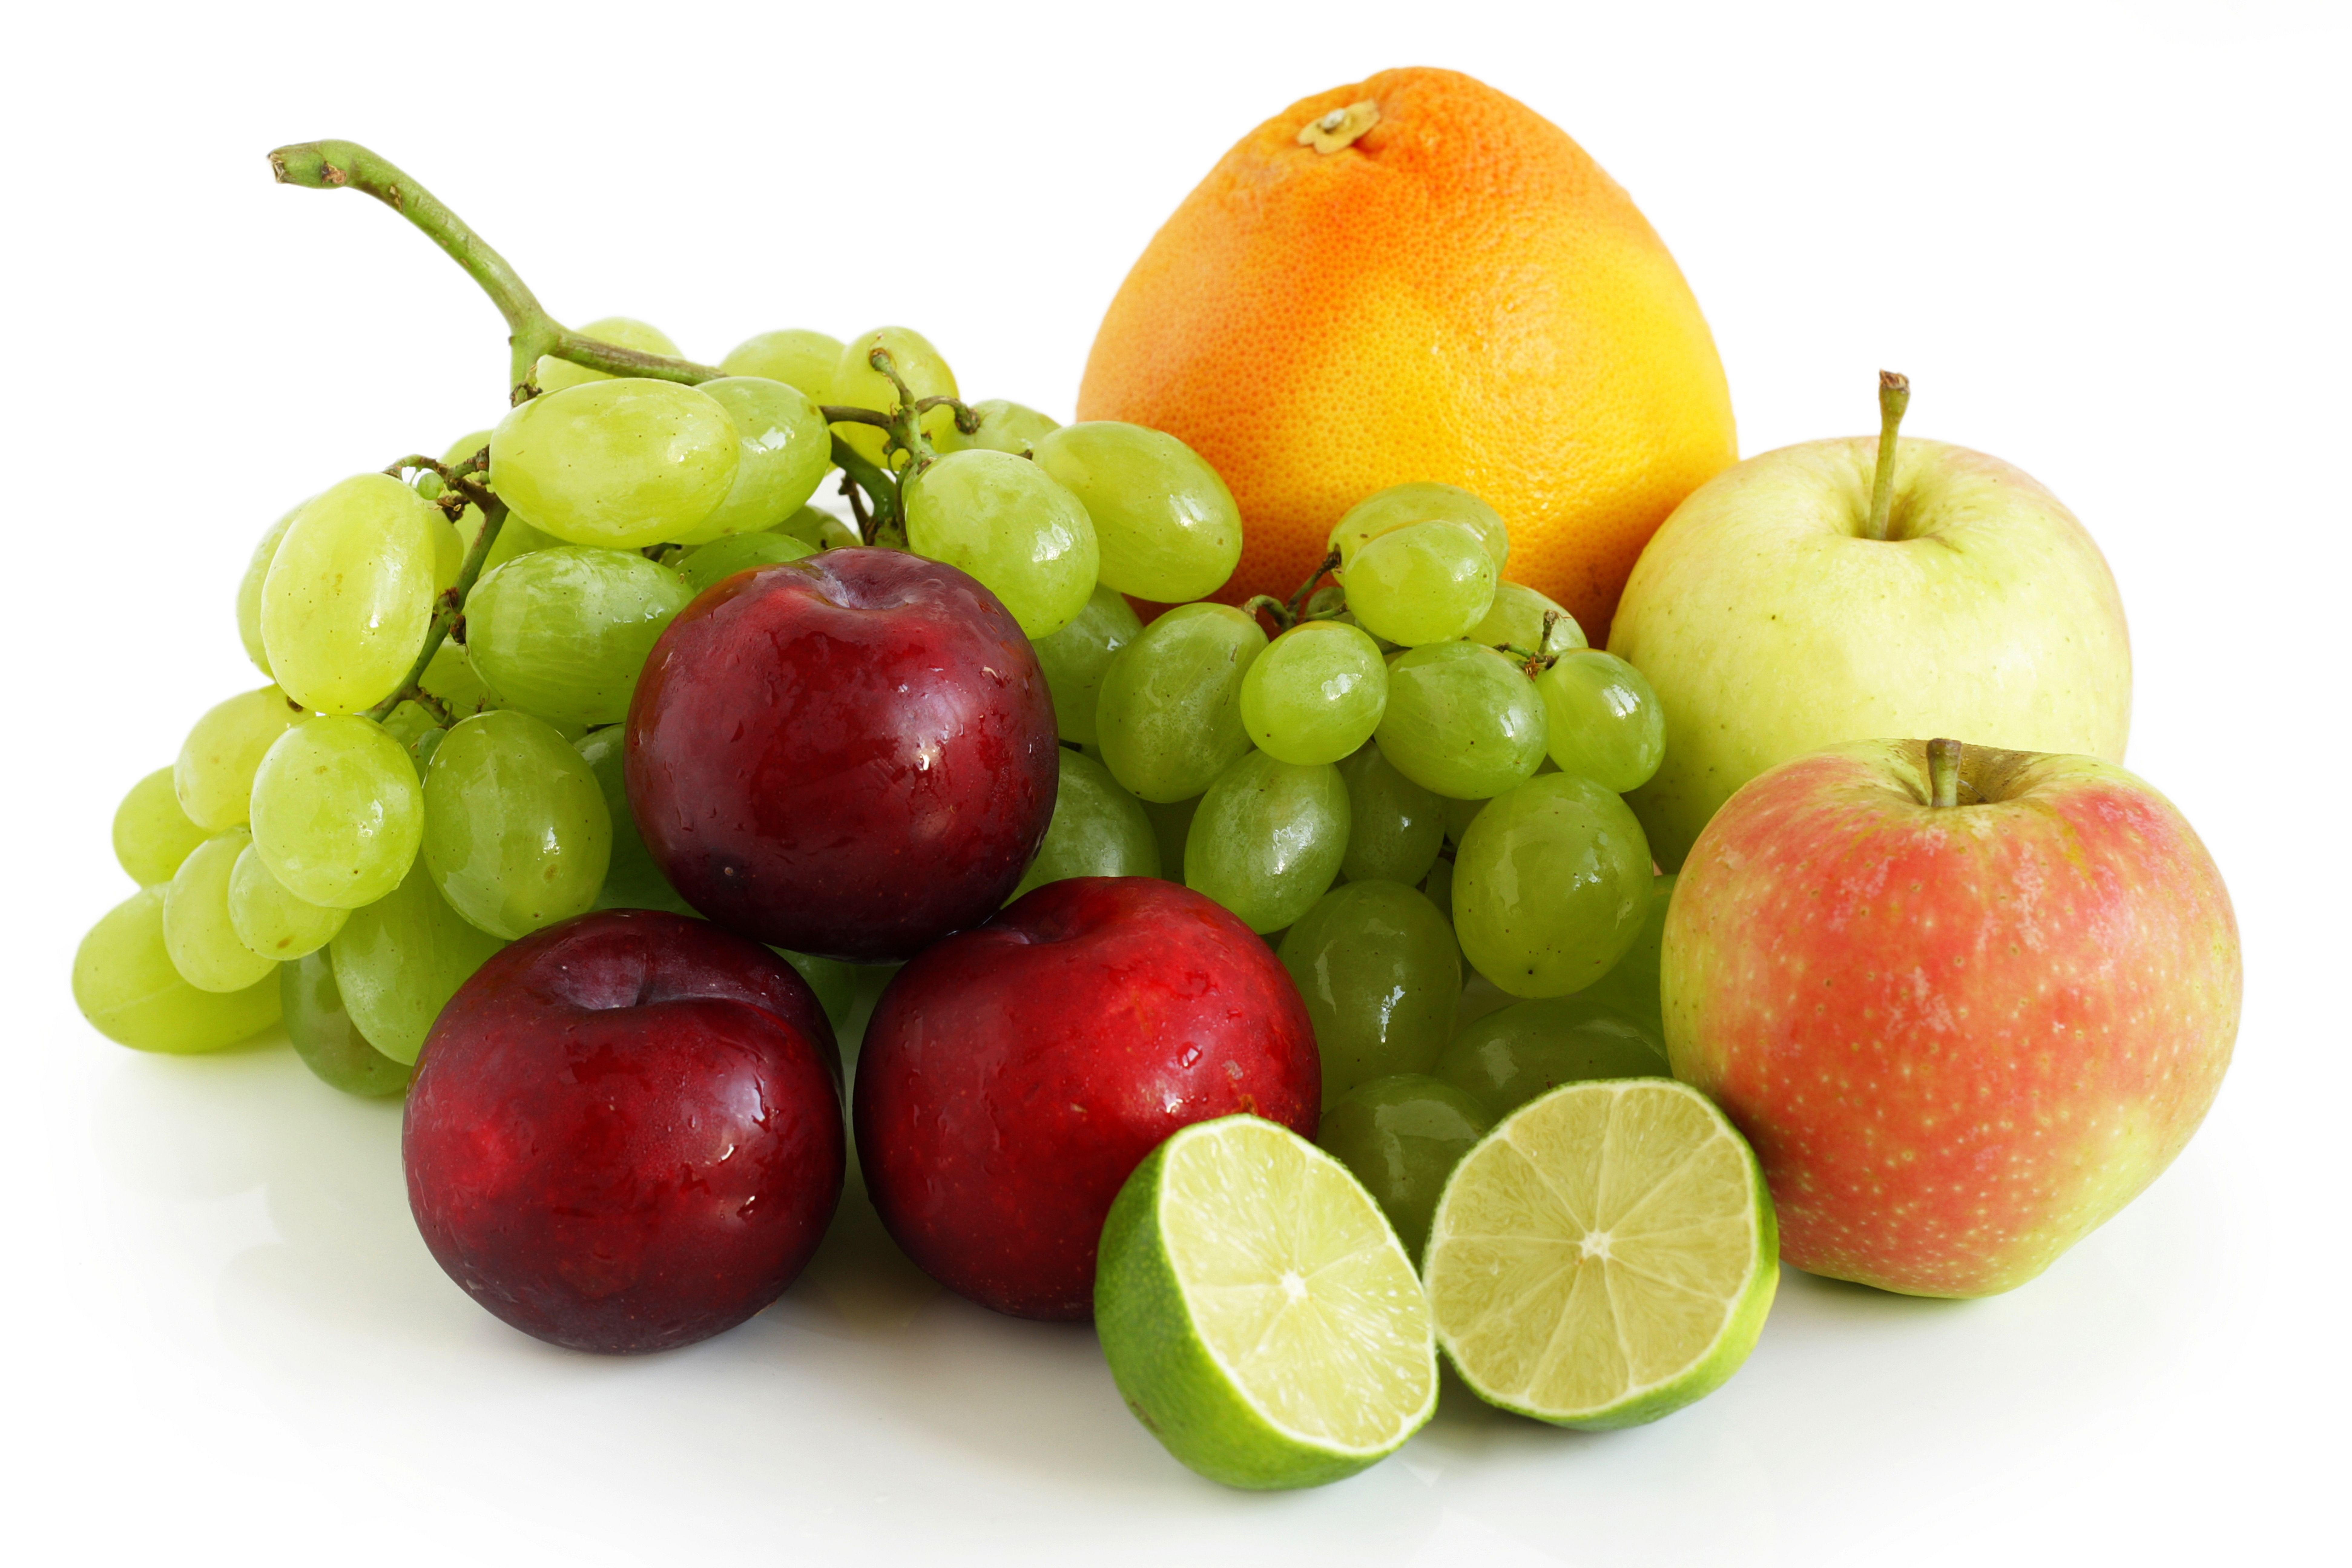 They some fruit. Фрукты. Фрукты и ягоды. Фрукты на белом фоне. Разные фрукты.